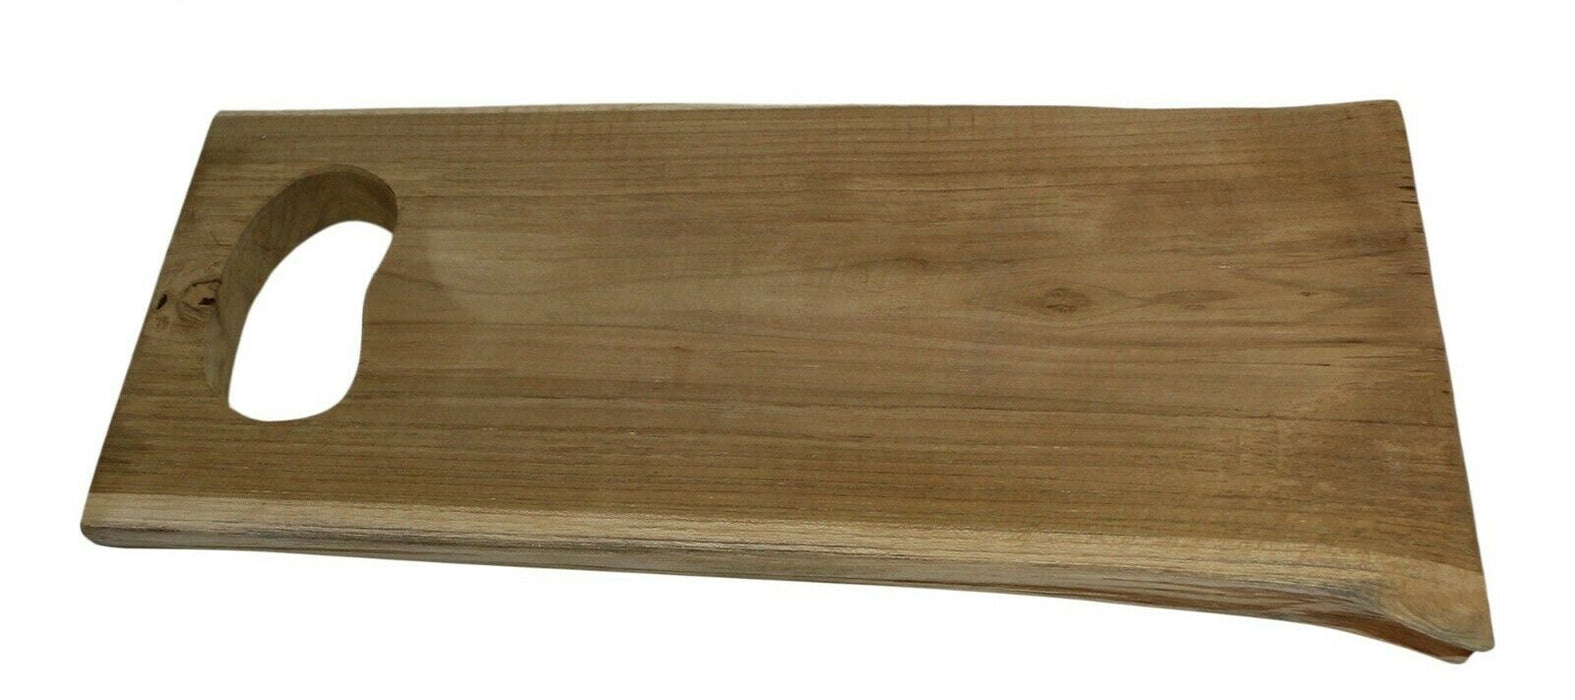 42cm Teak Wood Large Chopping Board Serving Board Serving Platter Unique Natural